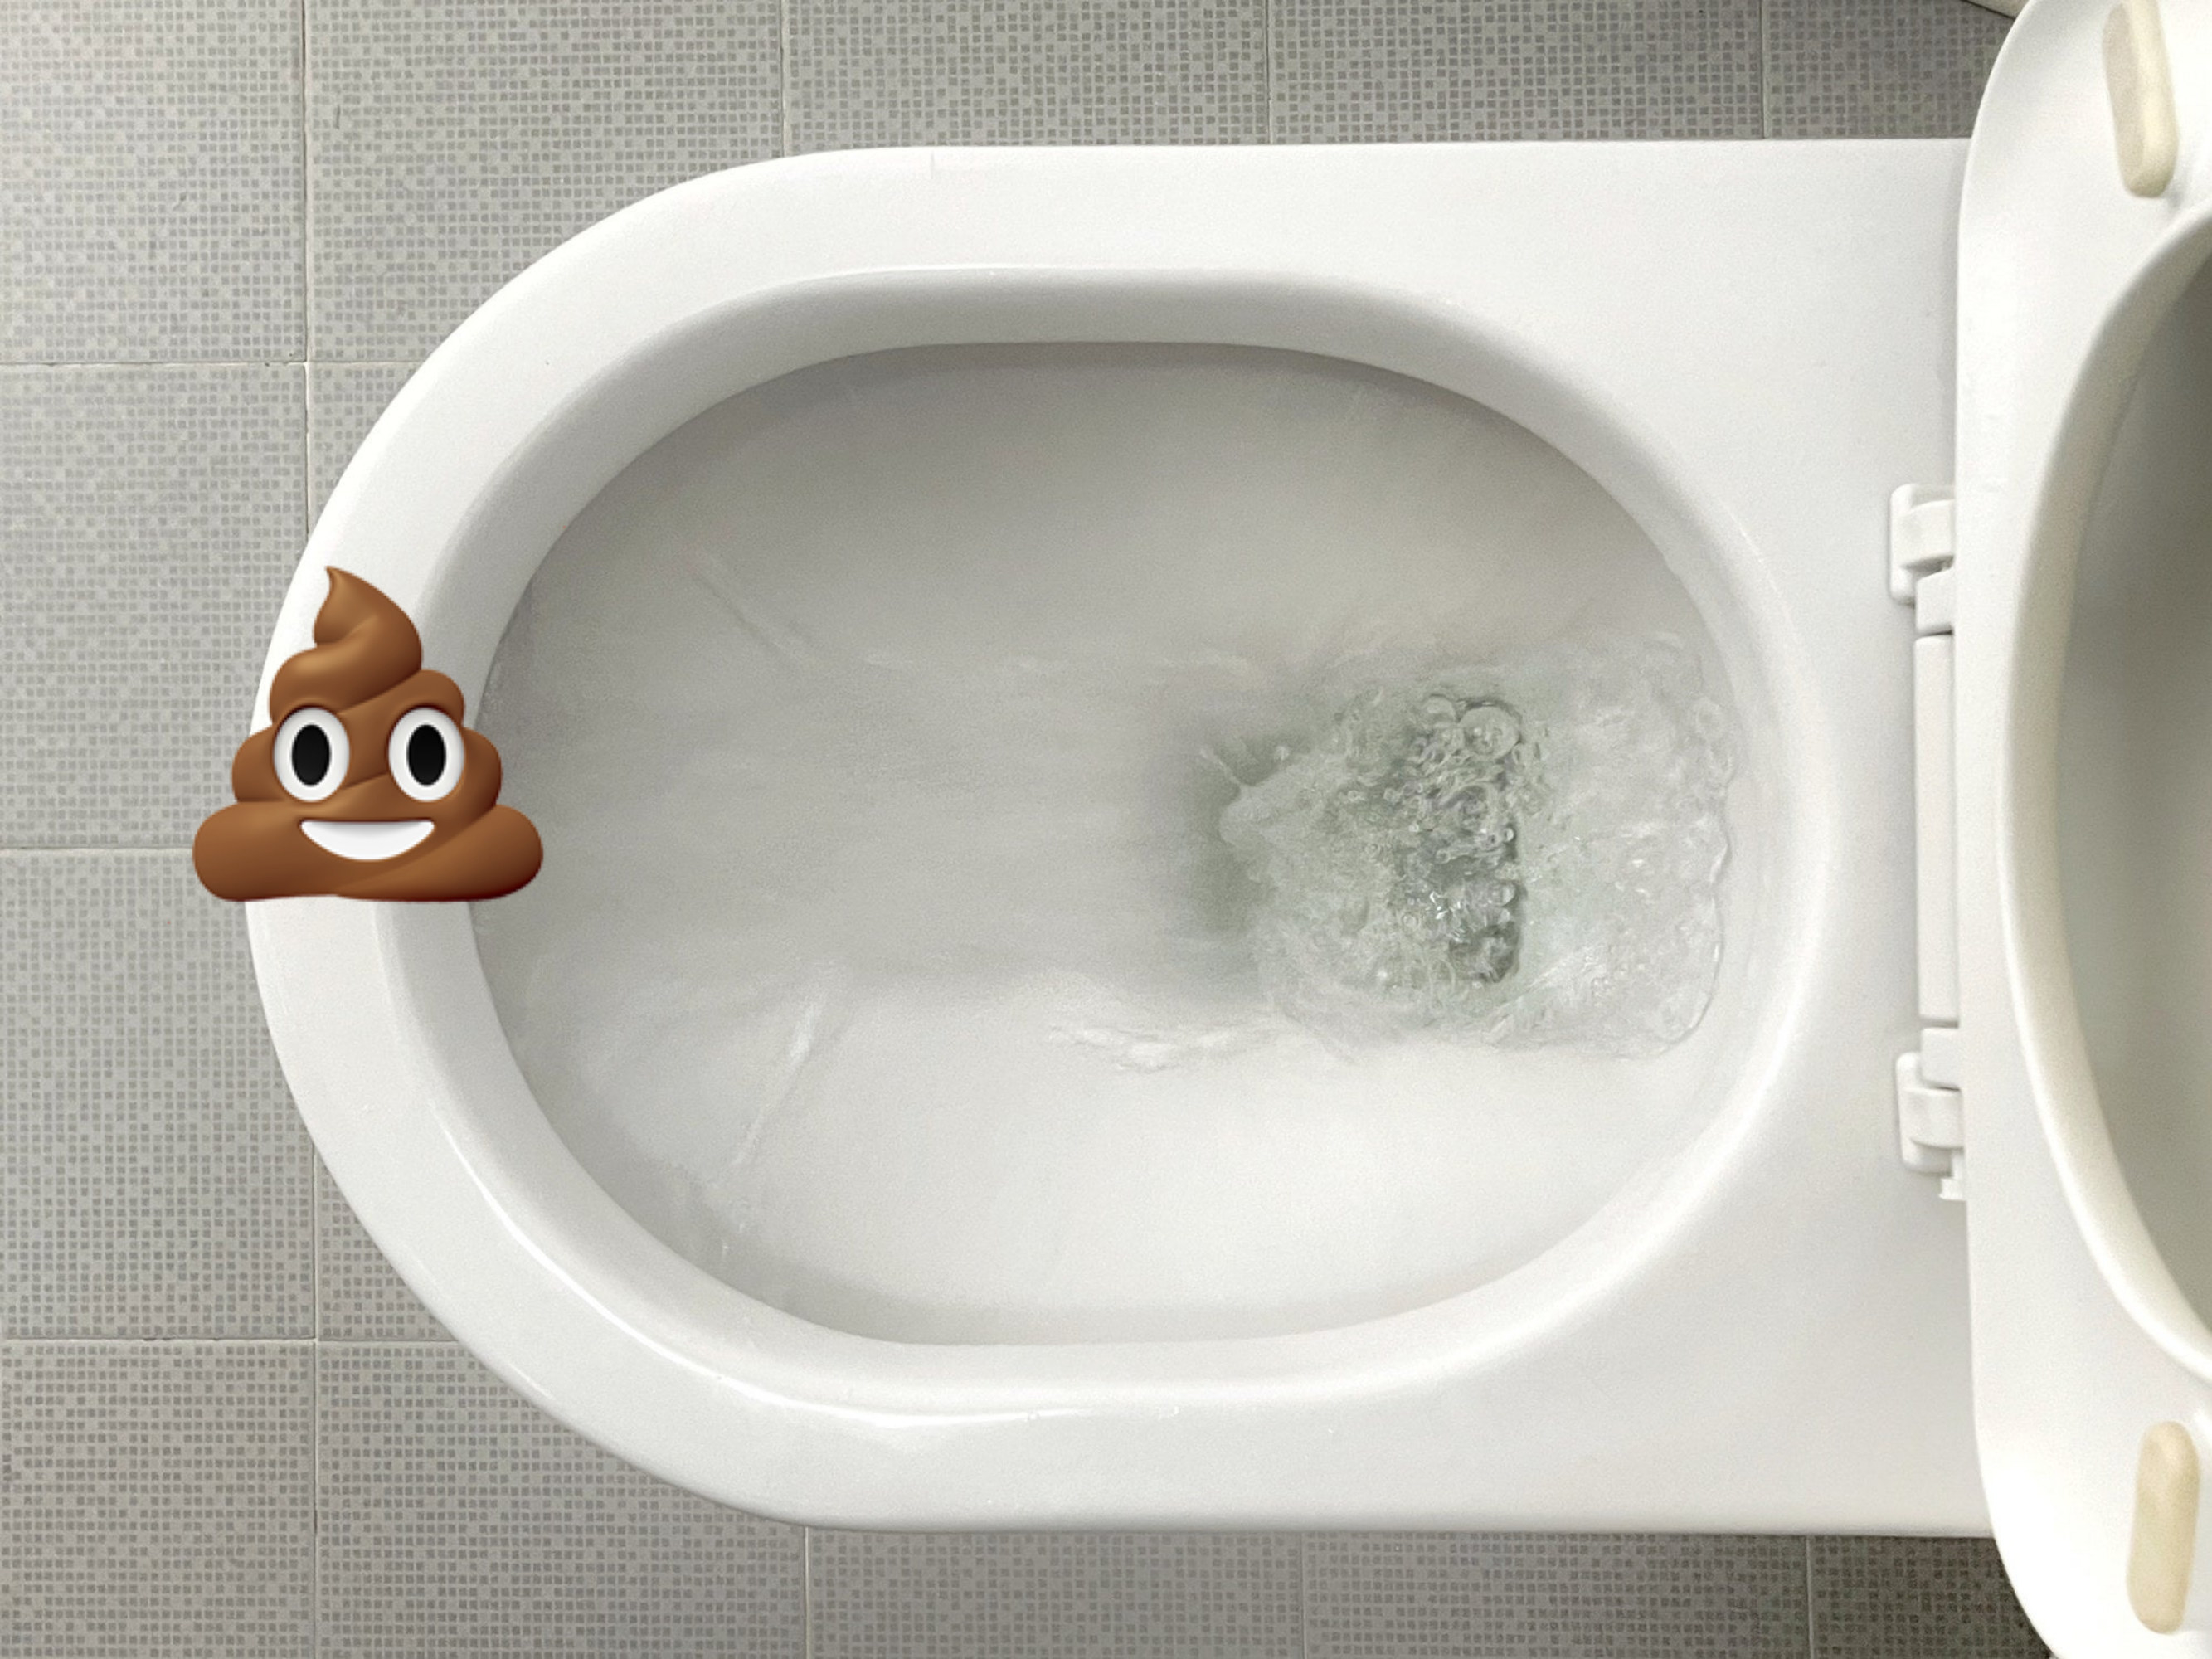 A poop emoji on a toilet